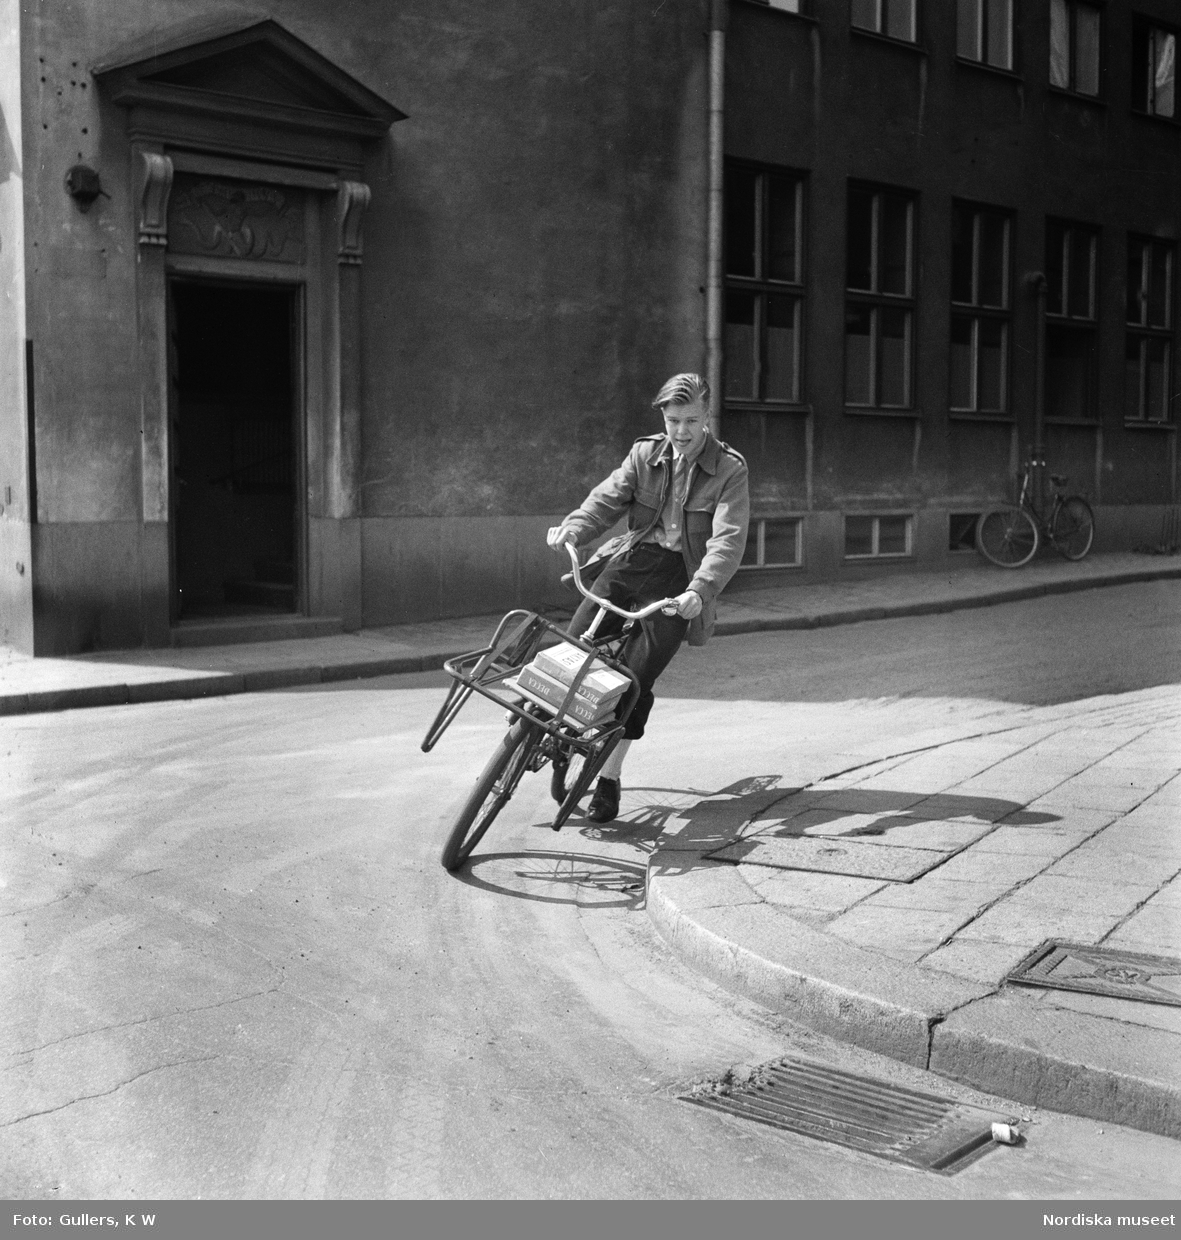 Cykelbud i Stockholm. Bertil Parmryd 14 år svänger ut från Bredgränd i Gamla stan,  mot Skeppsbron i dåtidens vänstertrafik. På pakethållaren ligger paket med texten "Aktas".